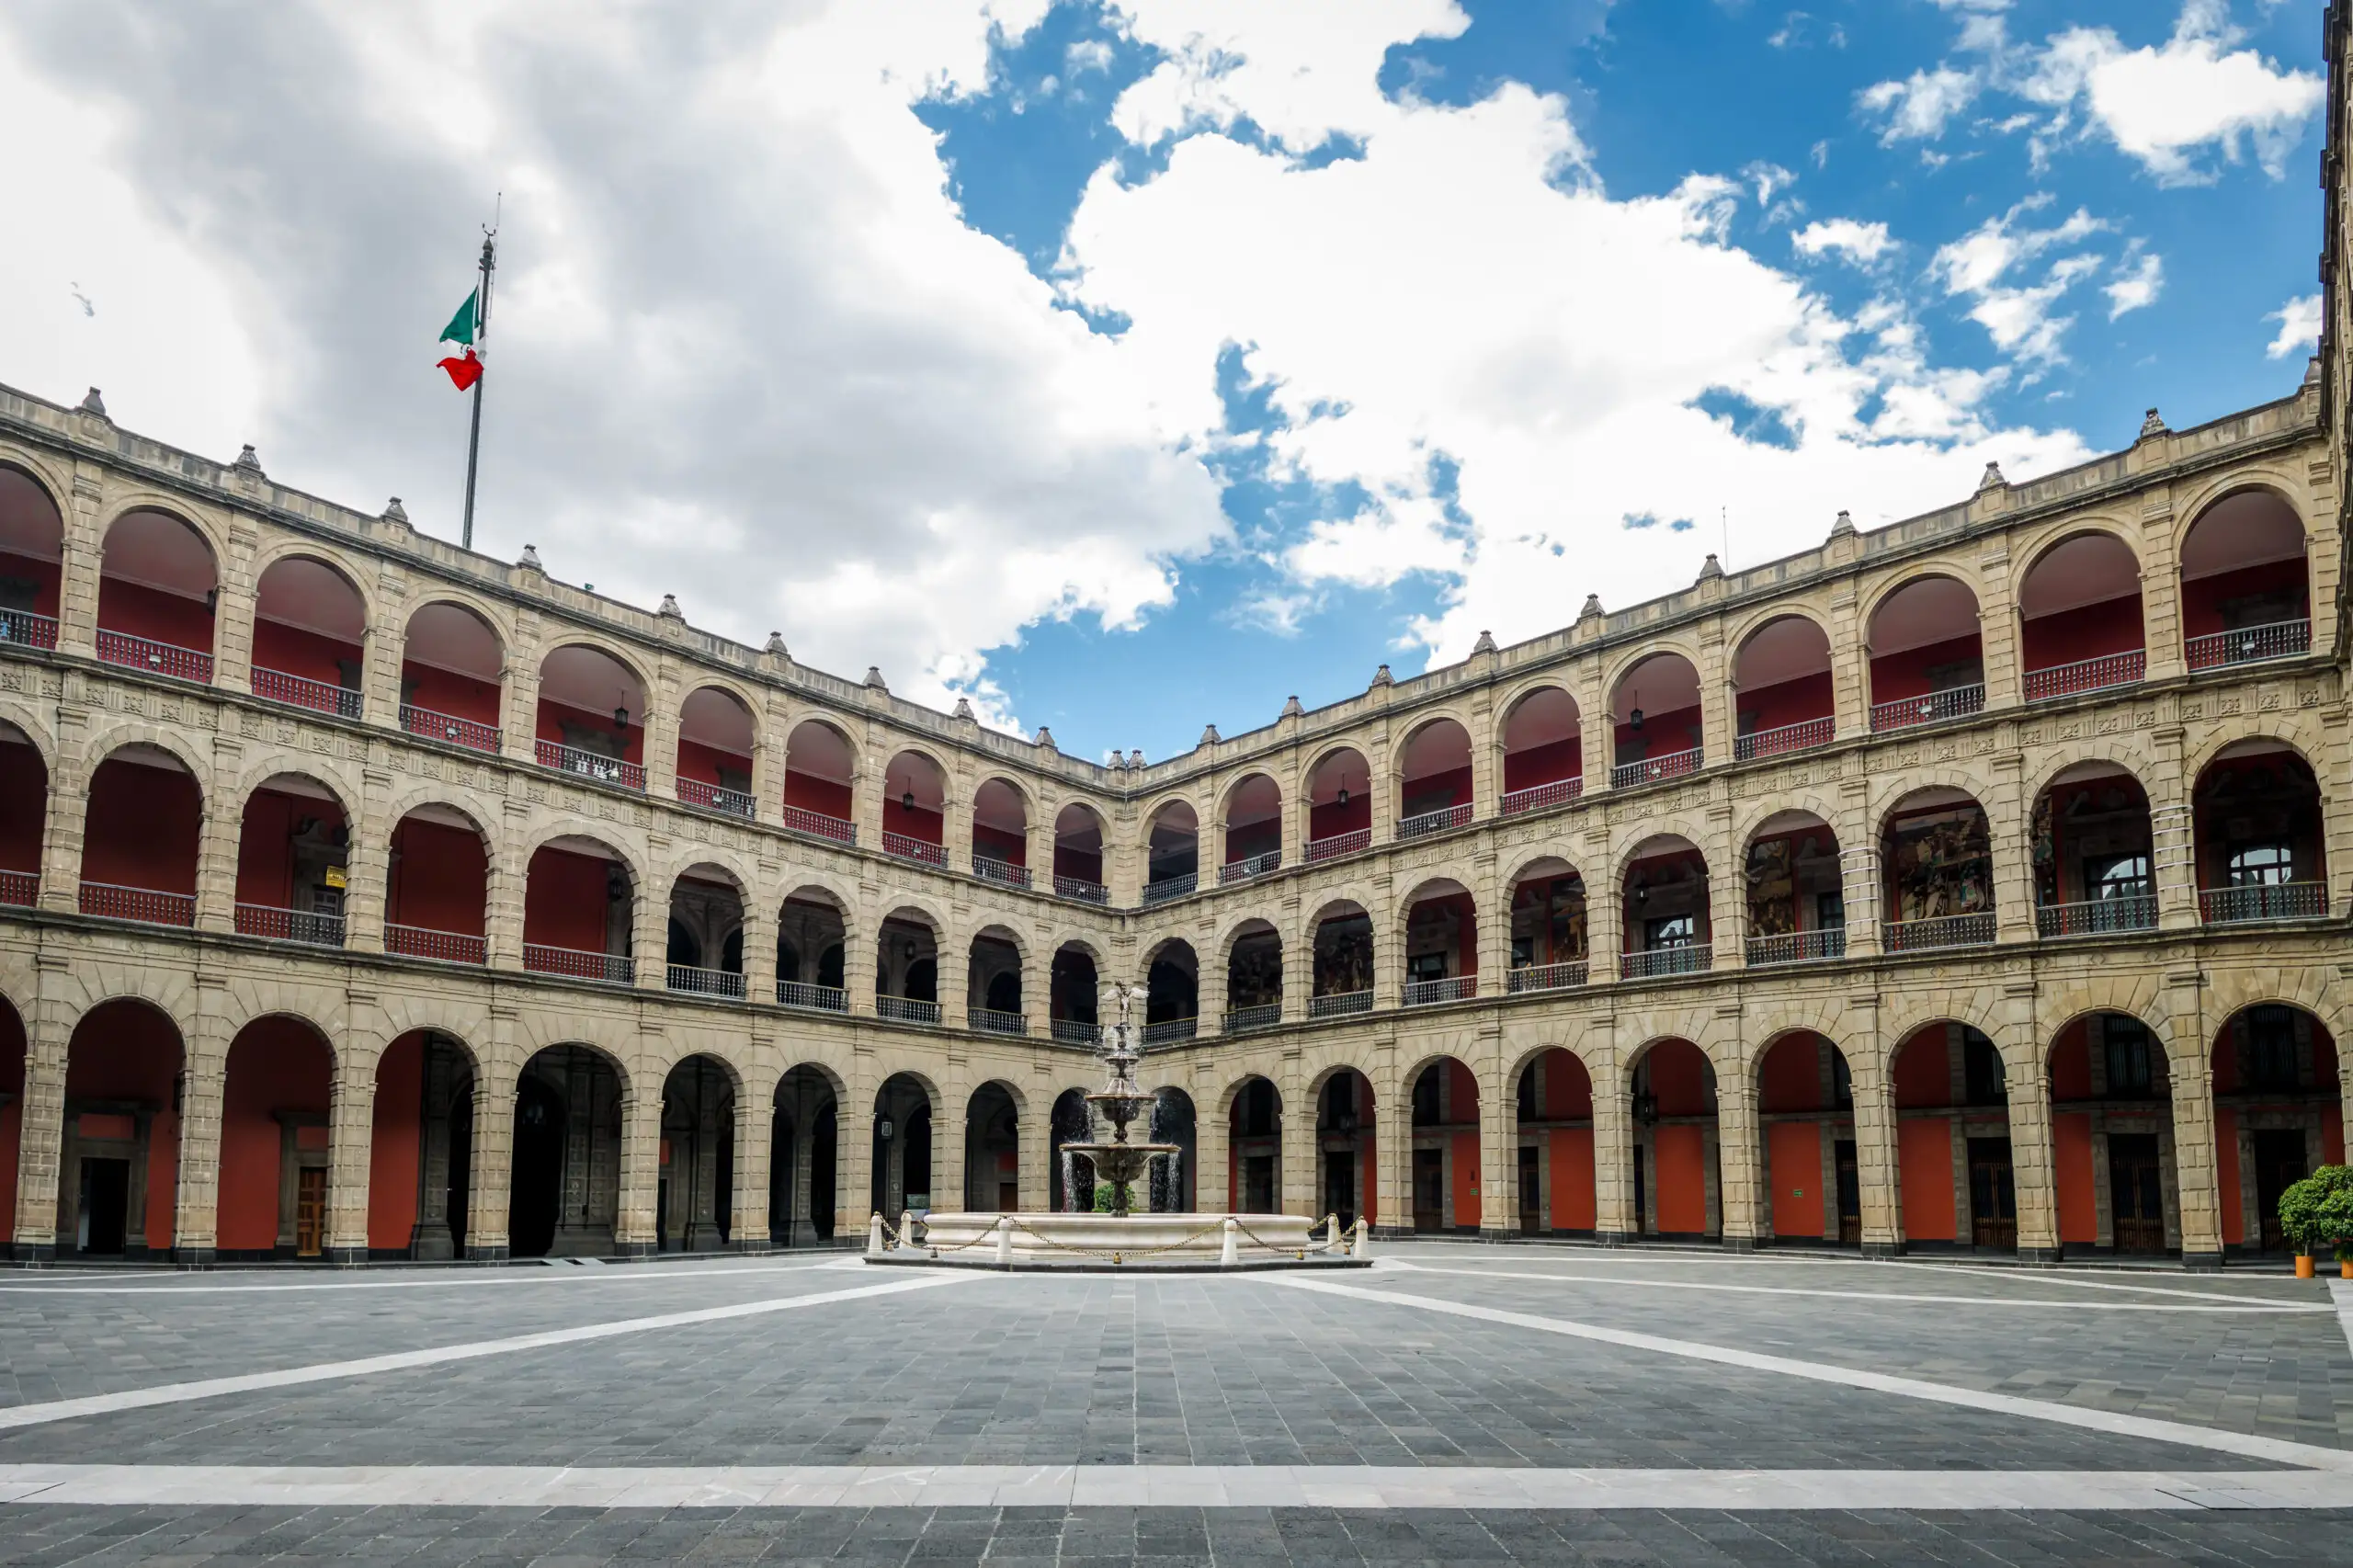 Courtyard and fountain at the Palacio Nacional in Mexico City, Mexico